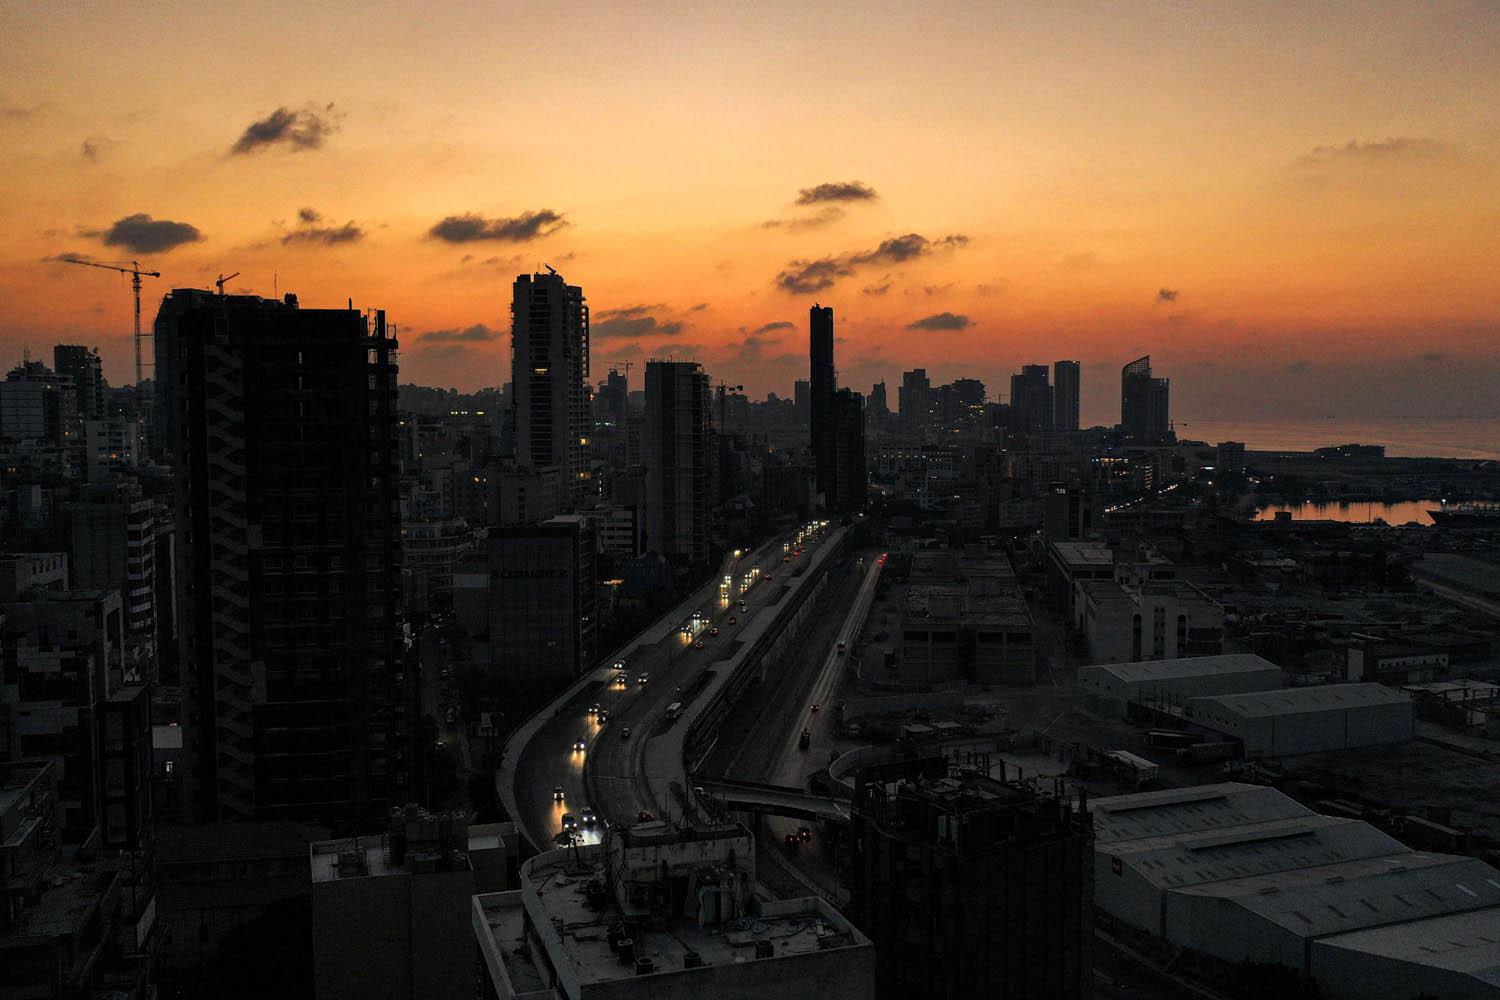 بيروت تغط في الظلام بعد قطع الكهرباء